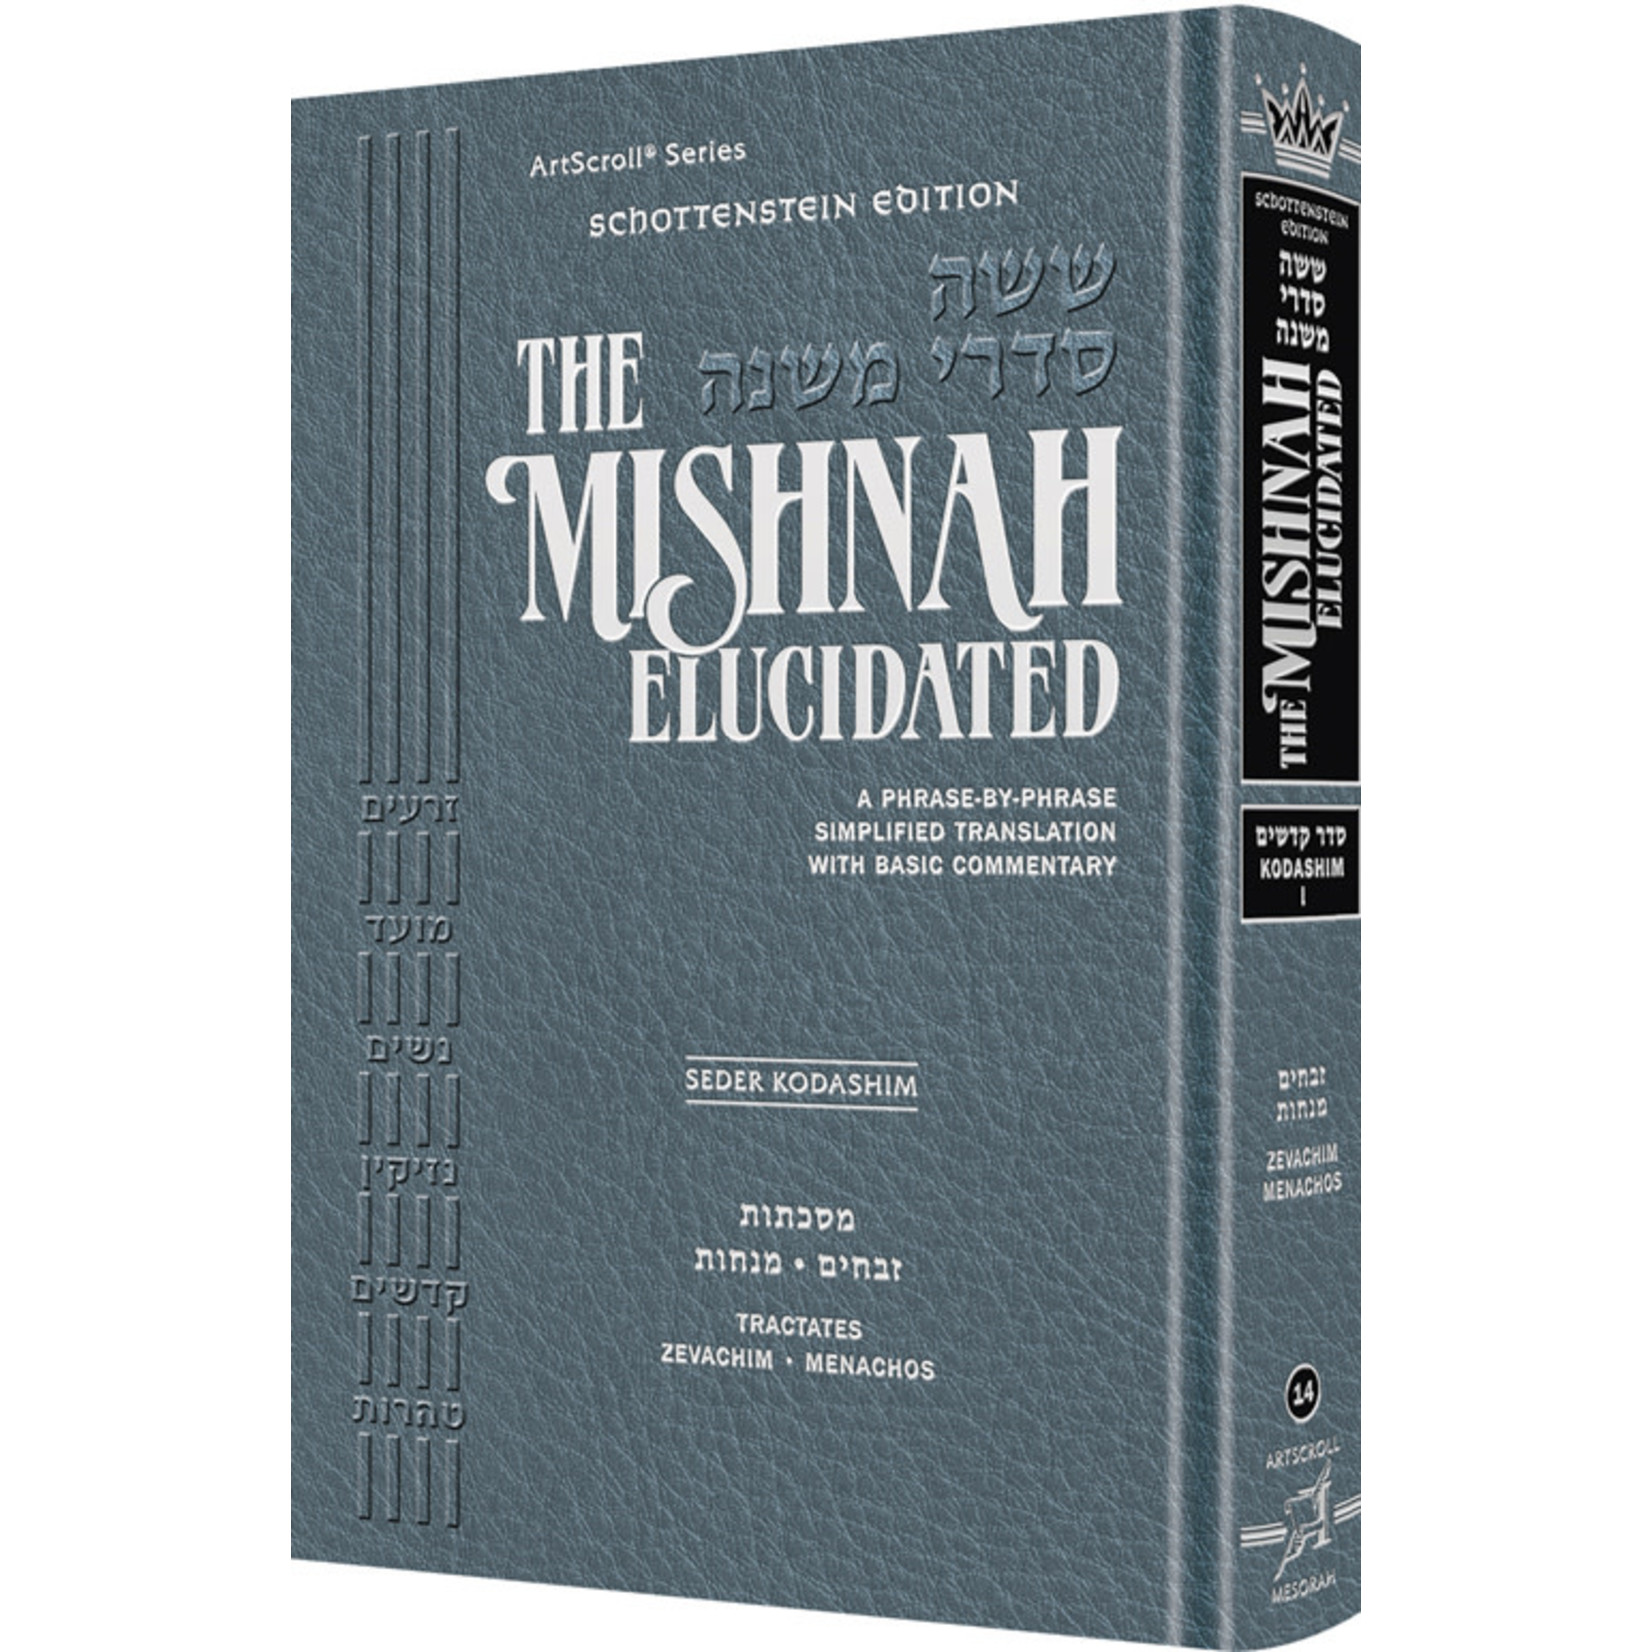 Kodashim Vol. 3 - ArtScroll Schottenstein Edition Hebrew/English Elucidated Mishnah, Full Size